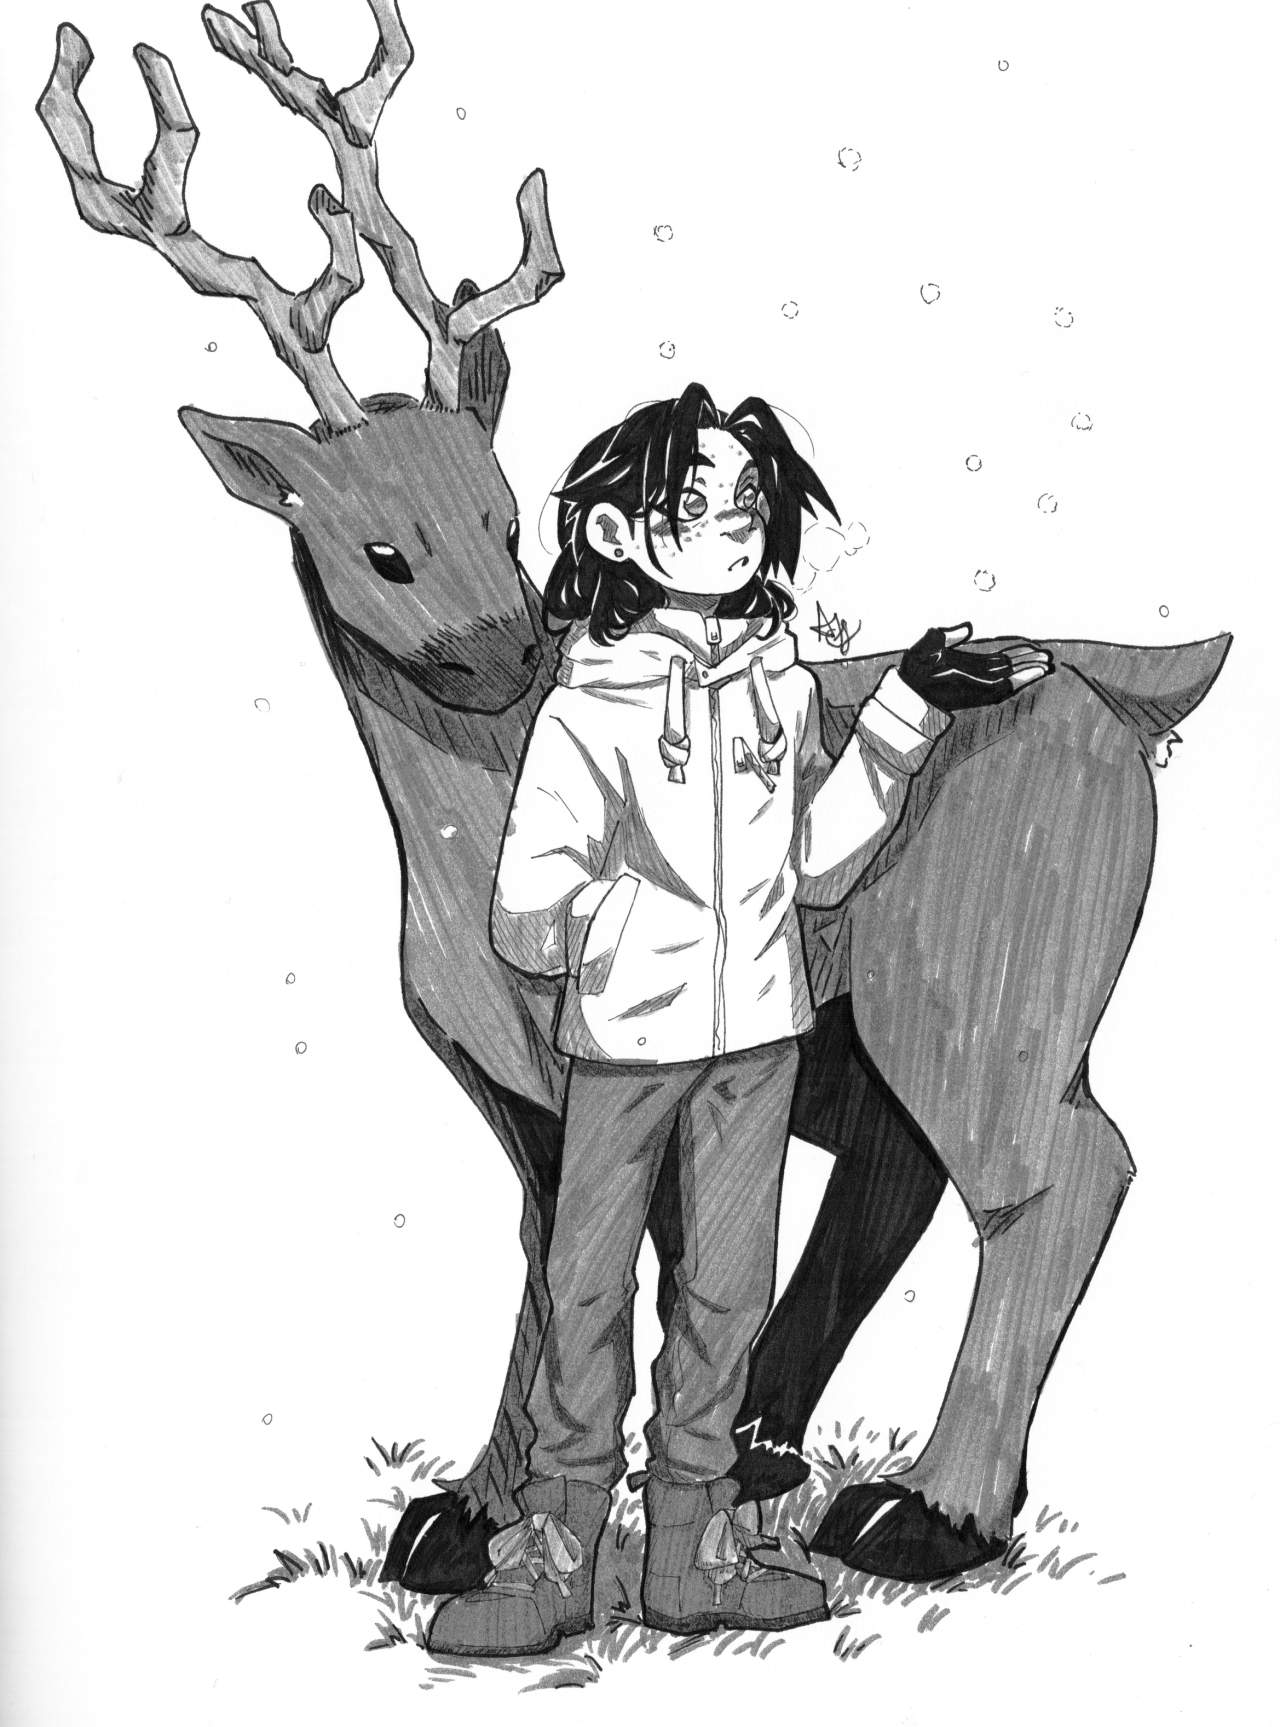 Nondiscript winter holiday post I actually really like drawing Shikadai